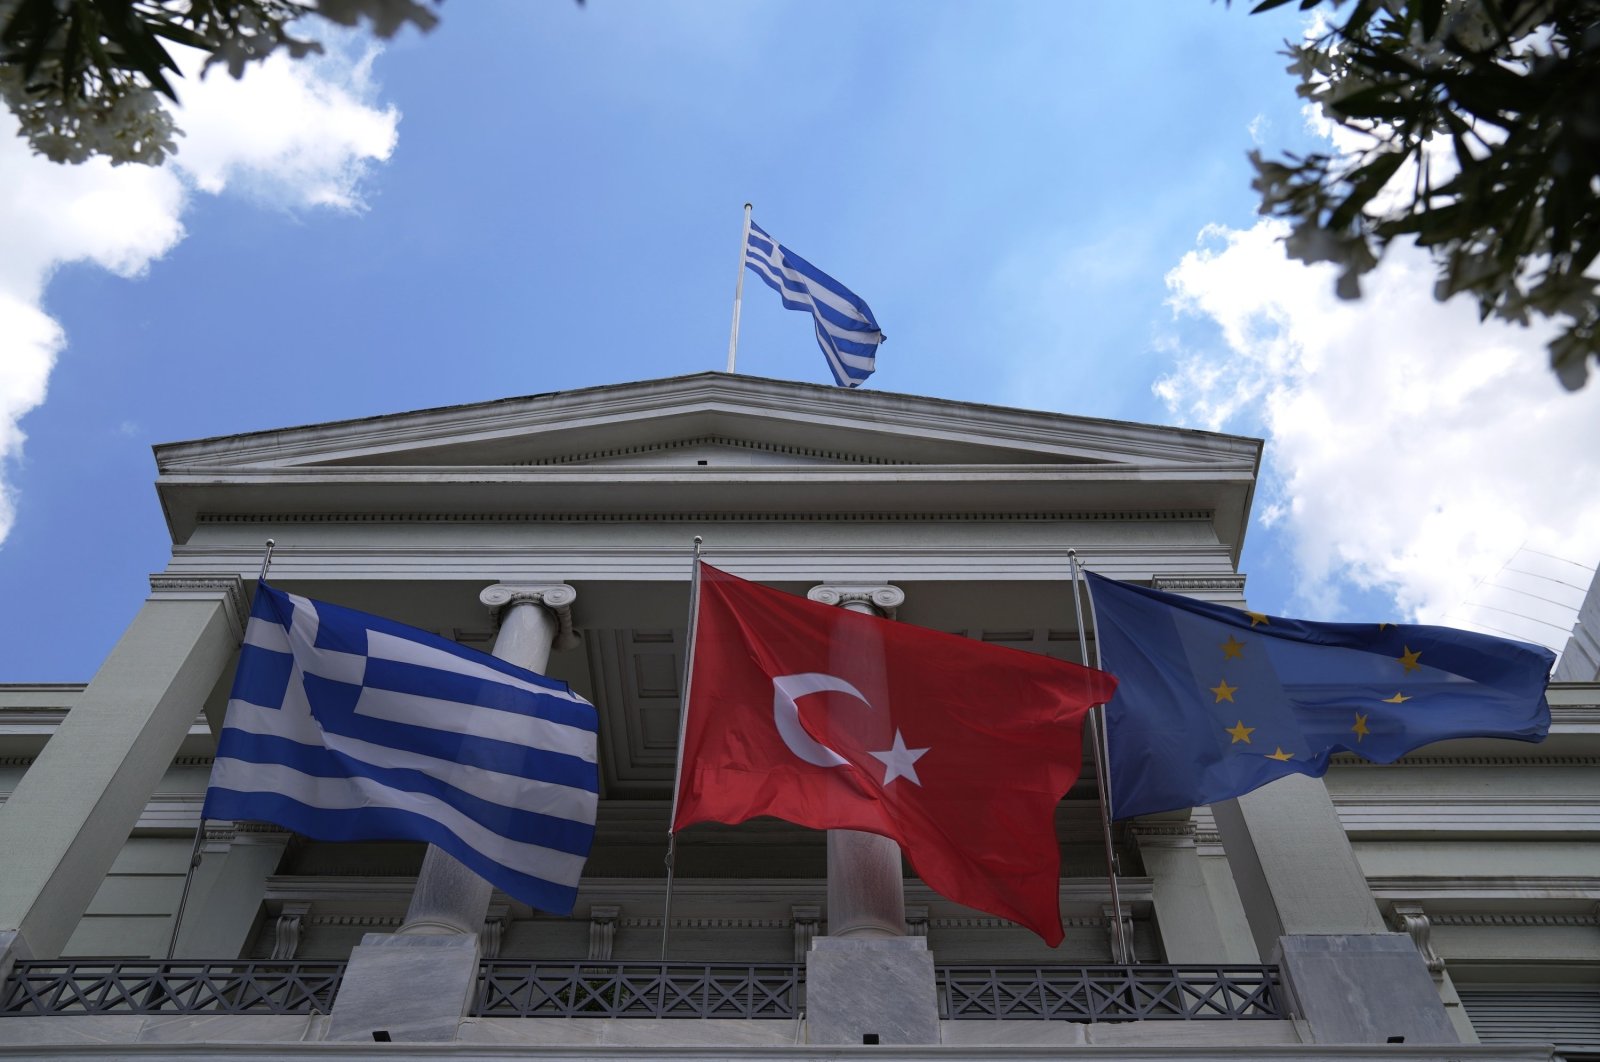 Türkiye, aşırı sağcı Yunan grupların “temelsiz” iddialarını reddediyor.